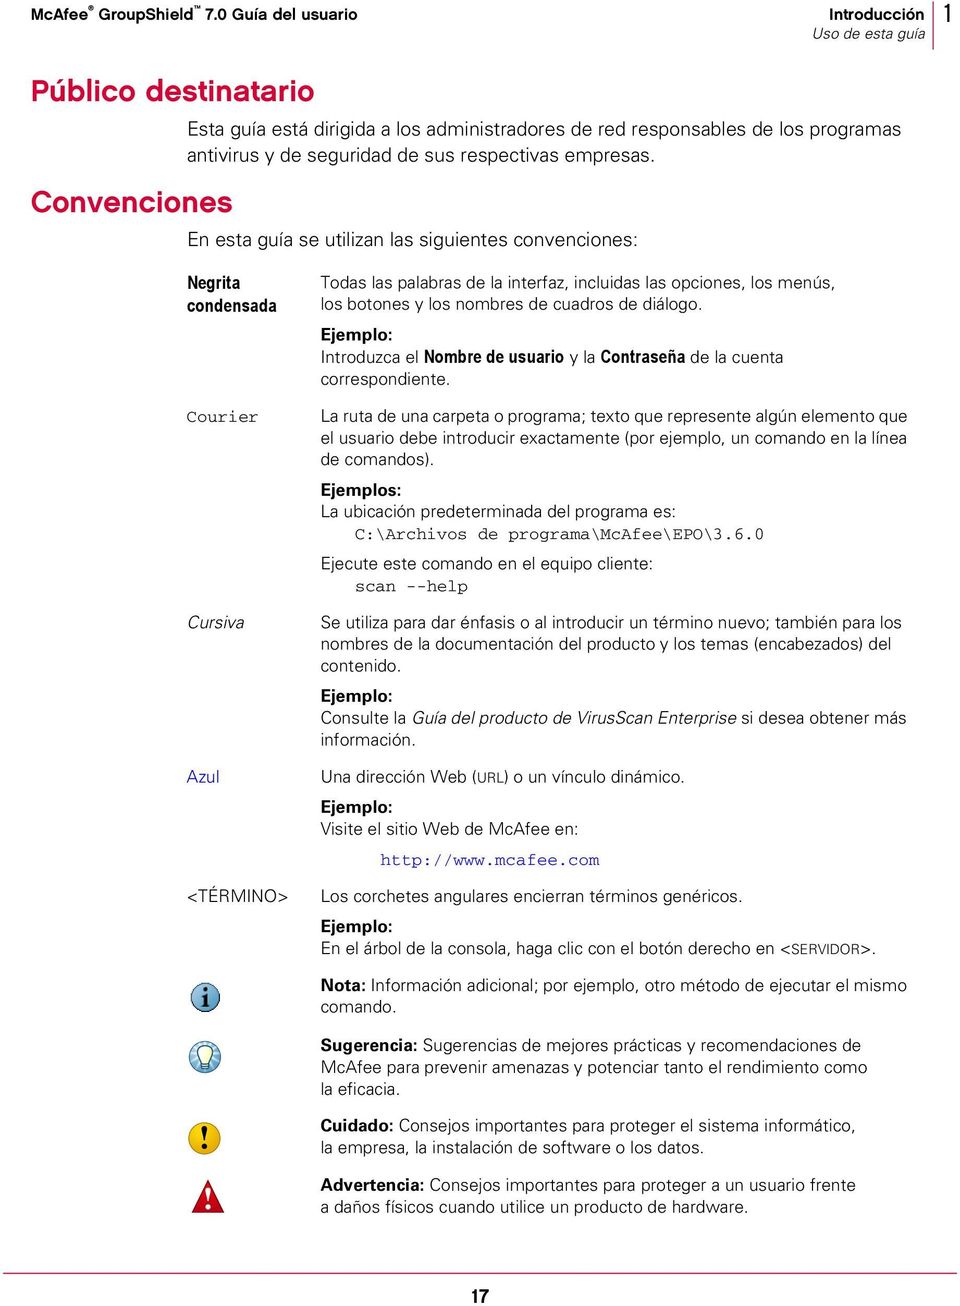 En esta guía se utilizan las siguientes convenciones: Negrita condensada Courier Cursiva Azul <TÉRMINO> Todas las palabras de la interfaz, incluidas las opciones, los menús, los botones y los nombres